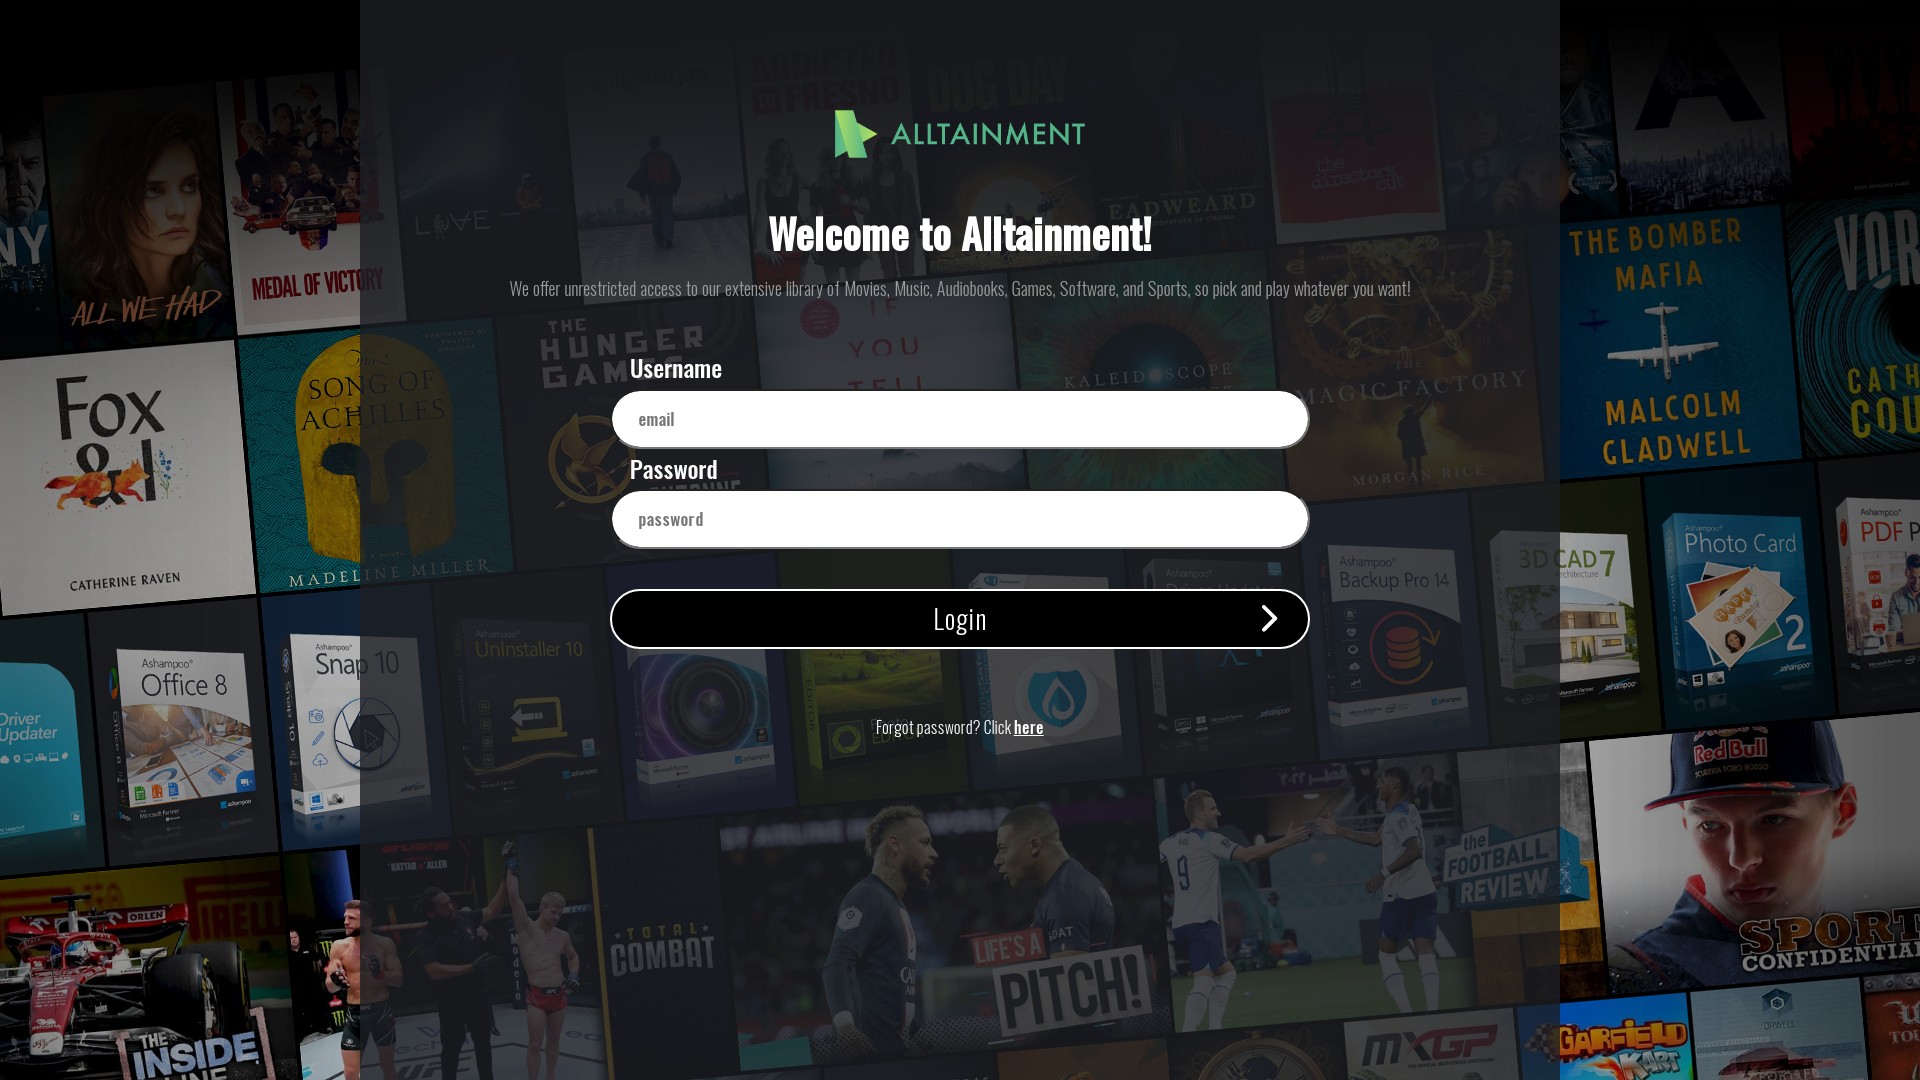 Alltainment at alltainment.com